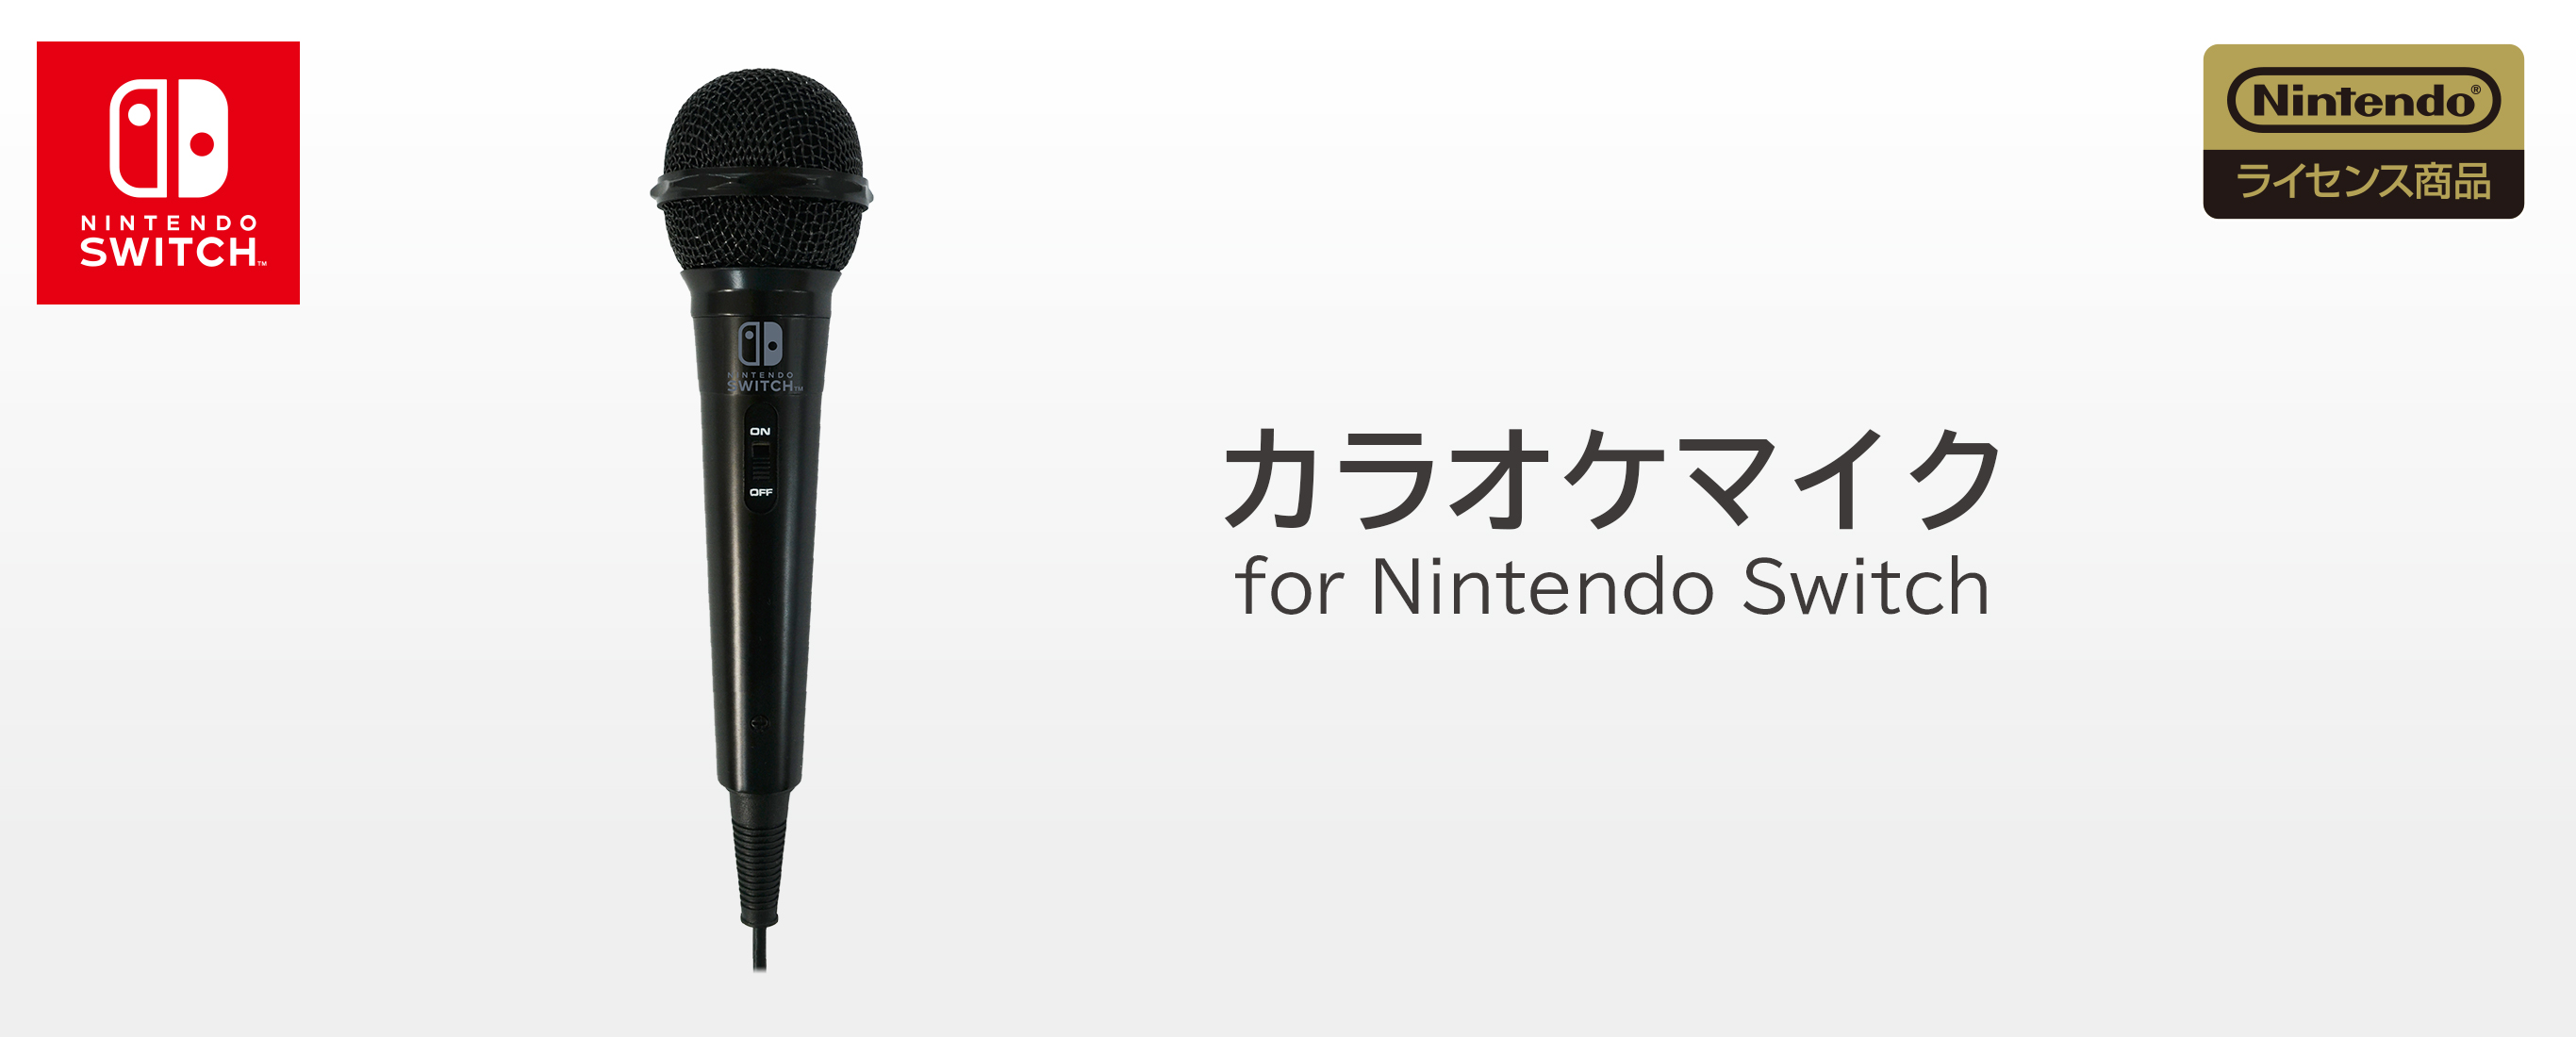 株式会社 HORI | カラオケマイク for Nintendo Switch